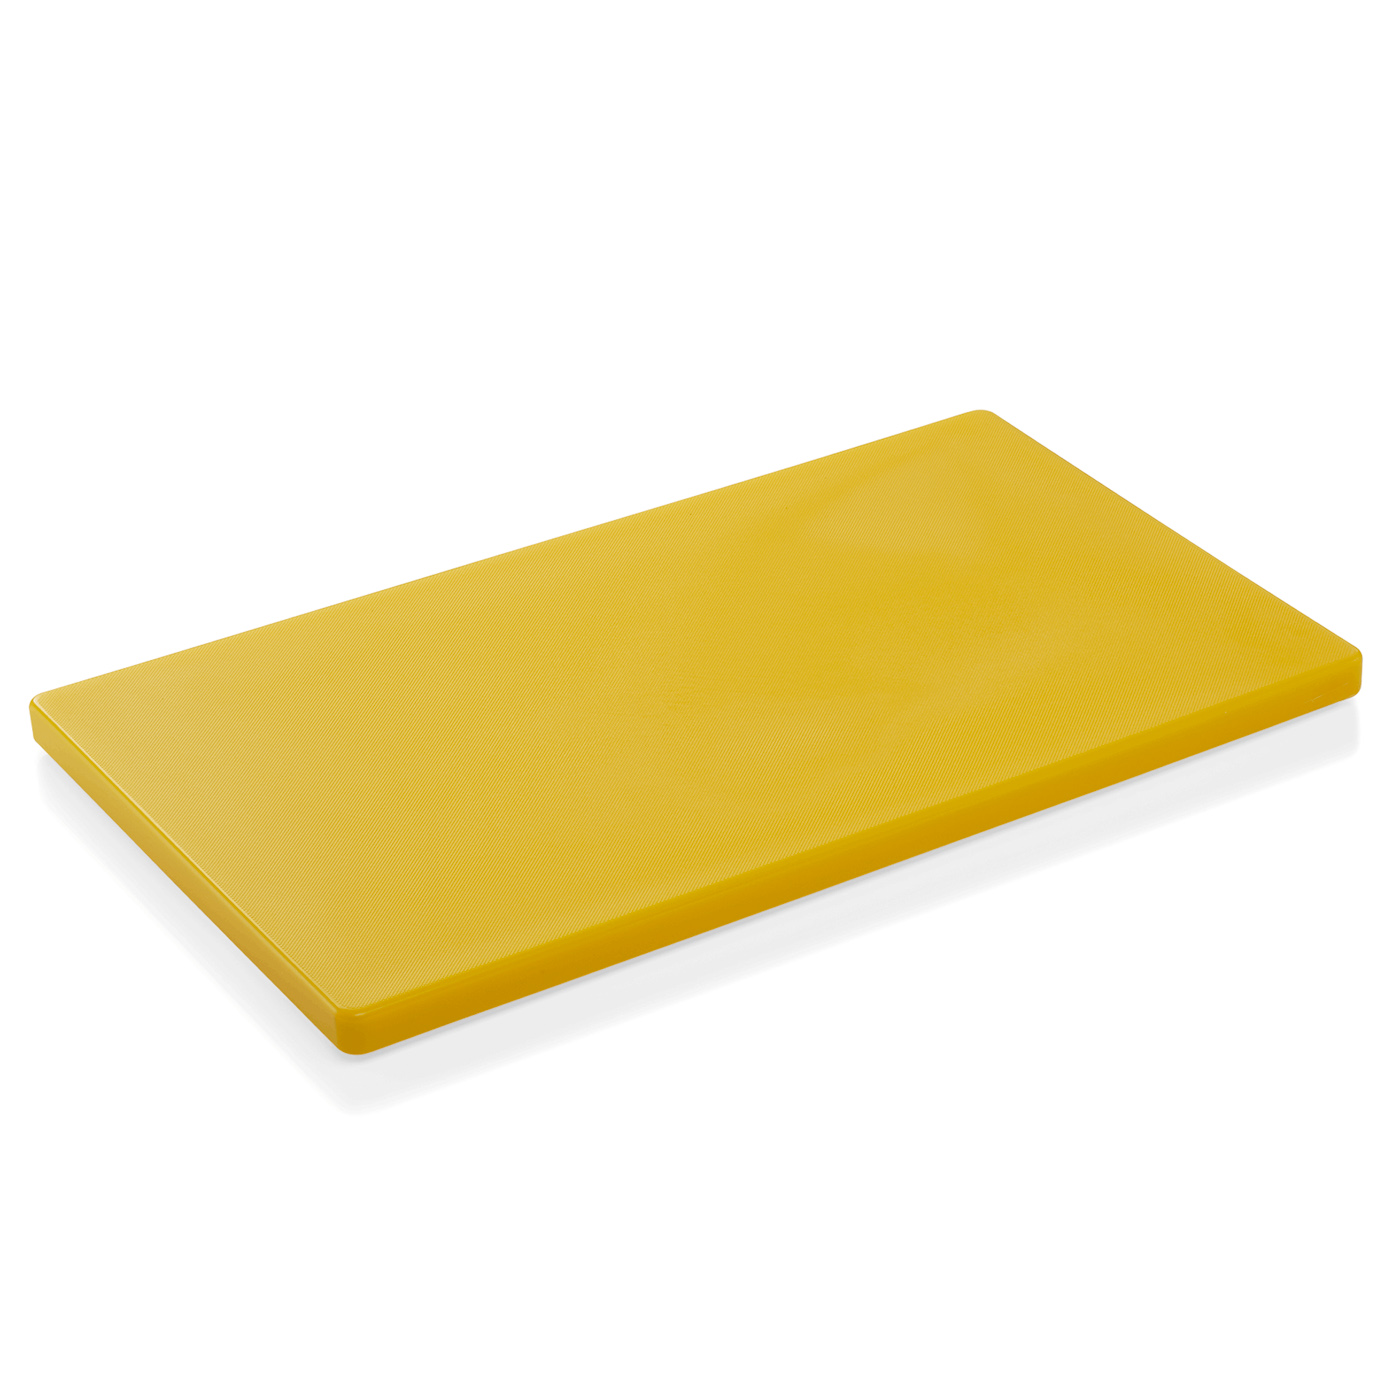 GN 1/1 HACCP Schneidbrett, Material: Polyethylen. Farbe: gelb. Maße: Höhe: 20 mm